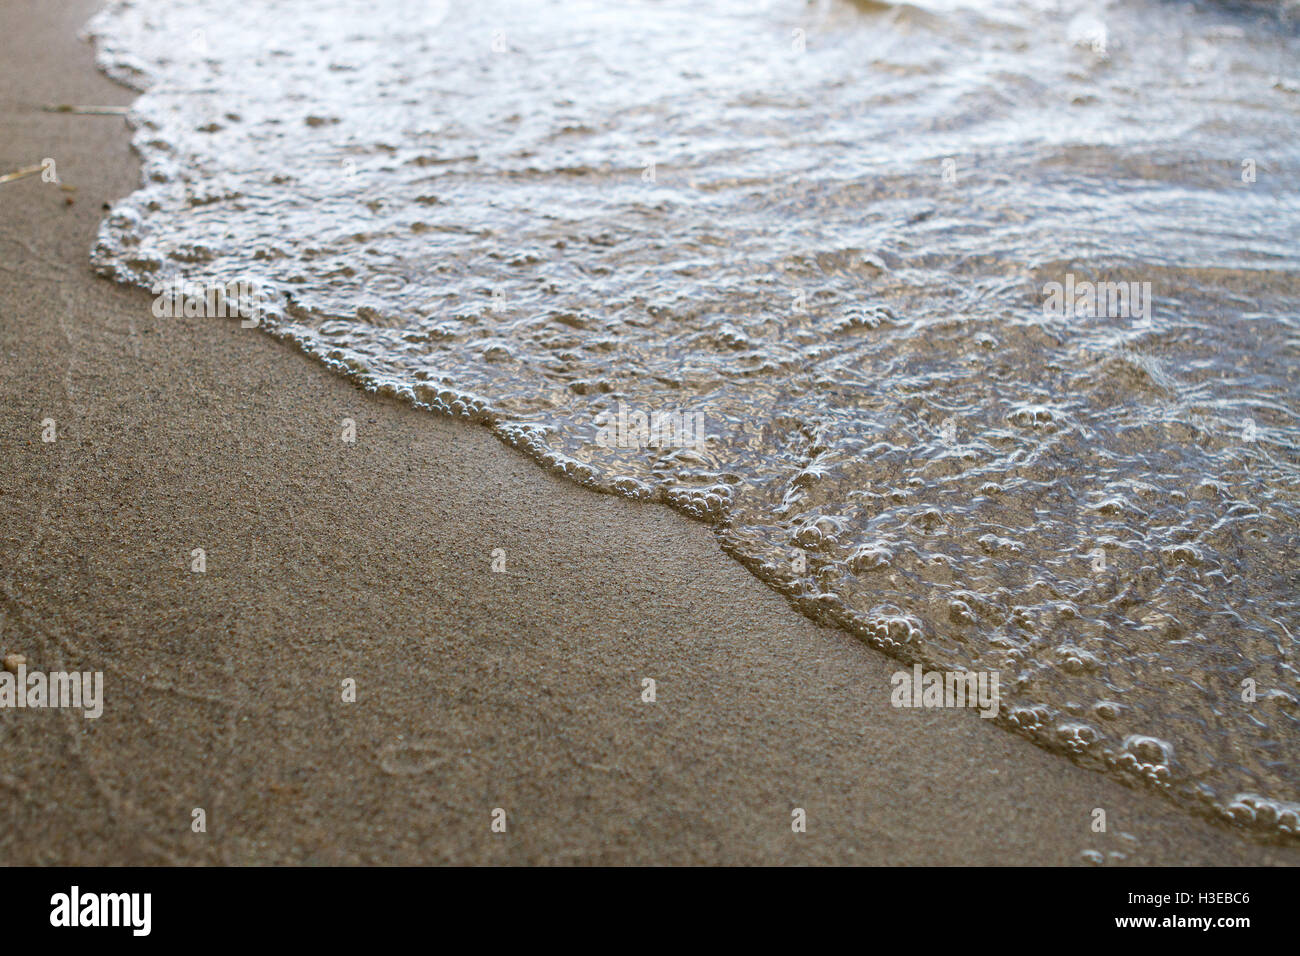 Strand mit ruhigen Wellen, glatten nassen Sand und Lichtreflexion auf dem Wasser Stockfoto